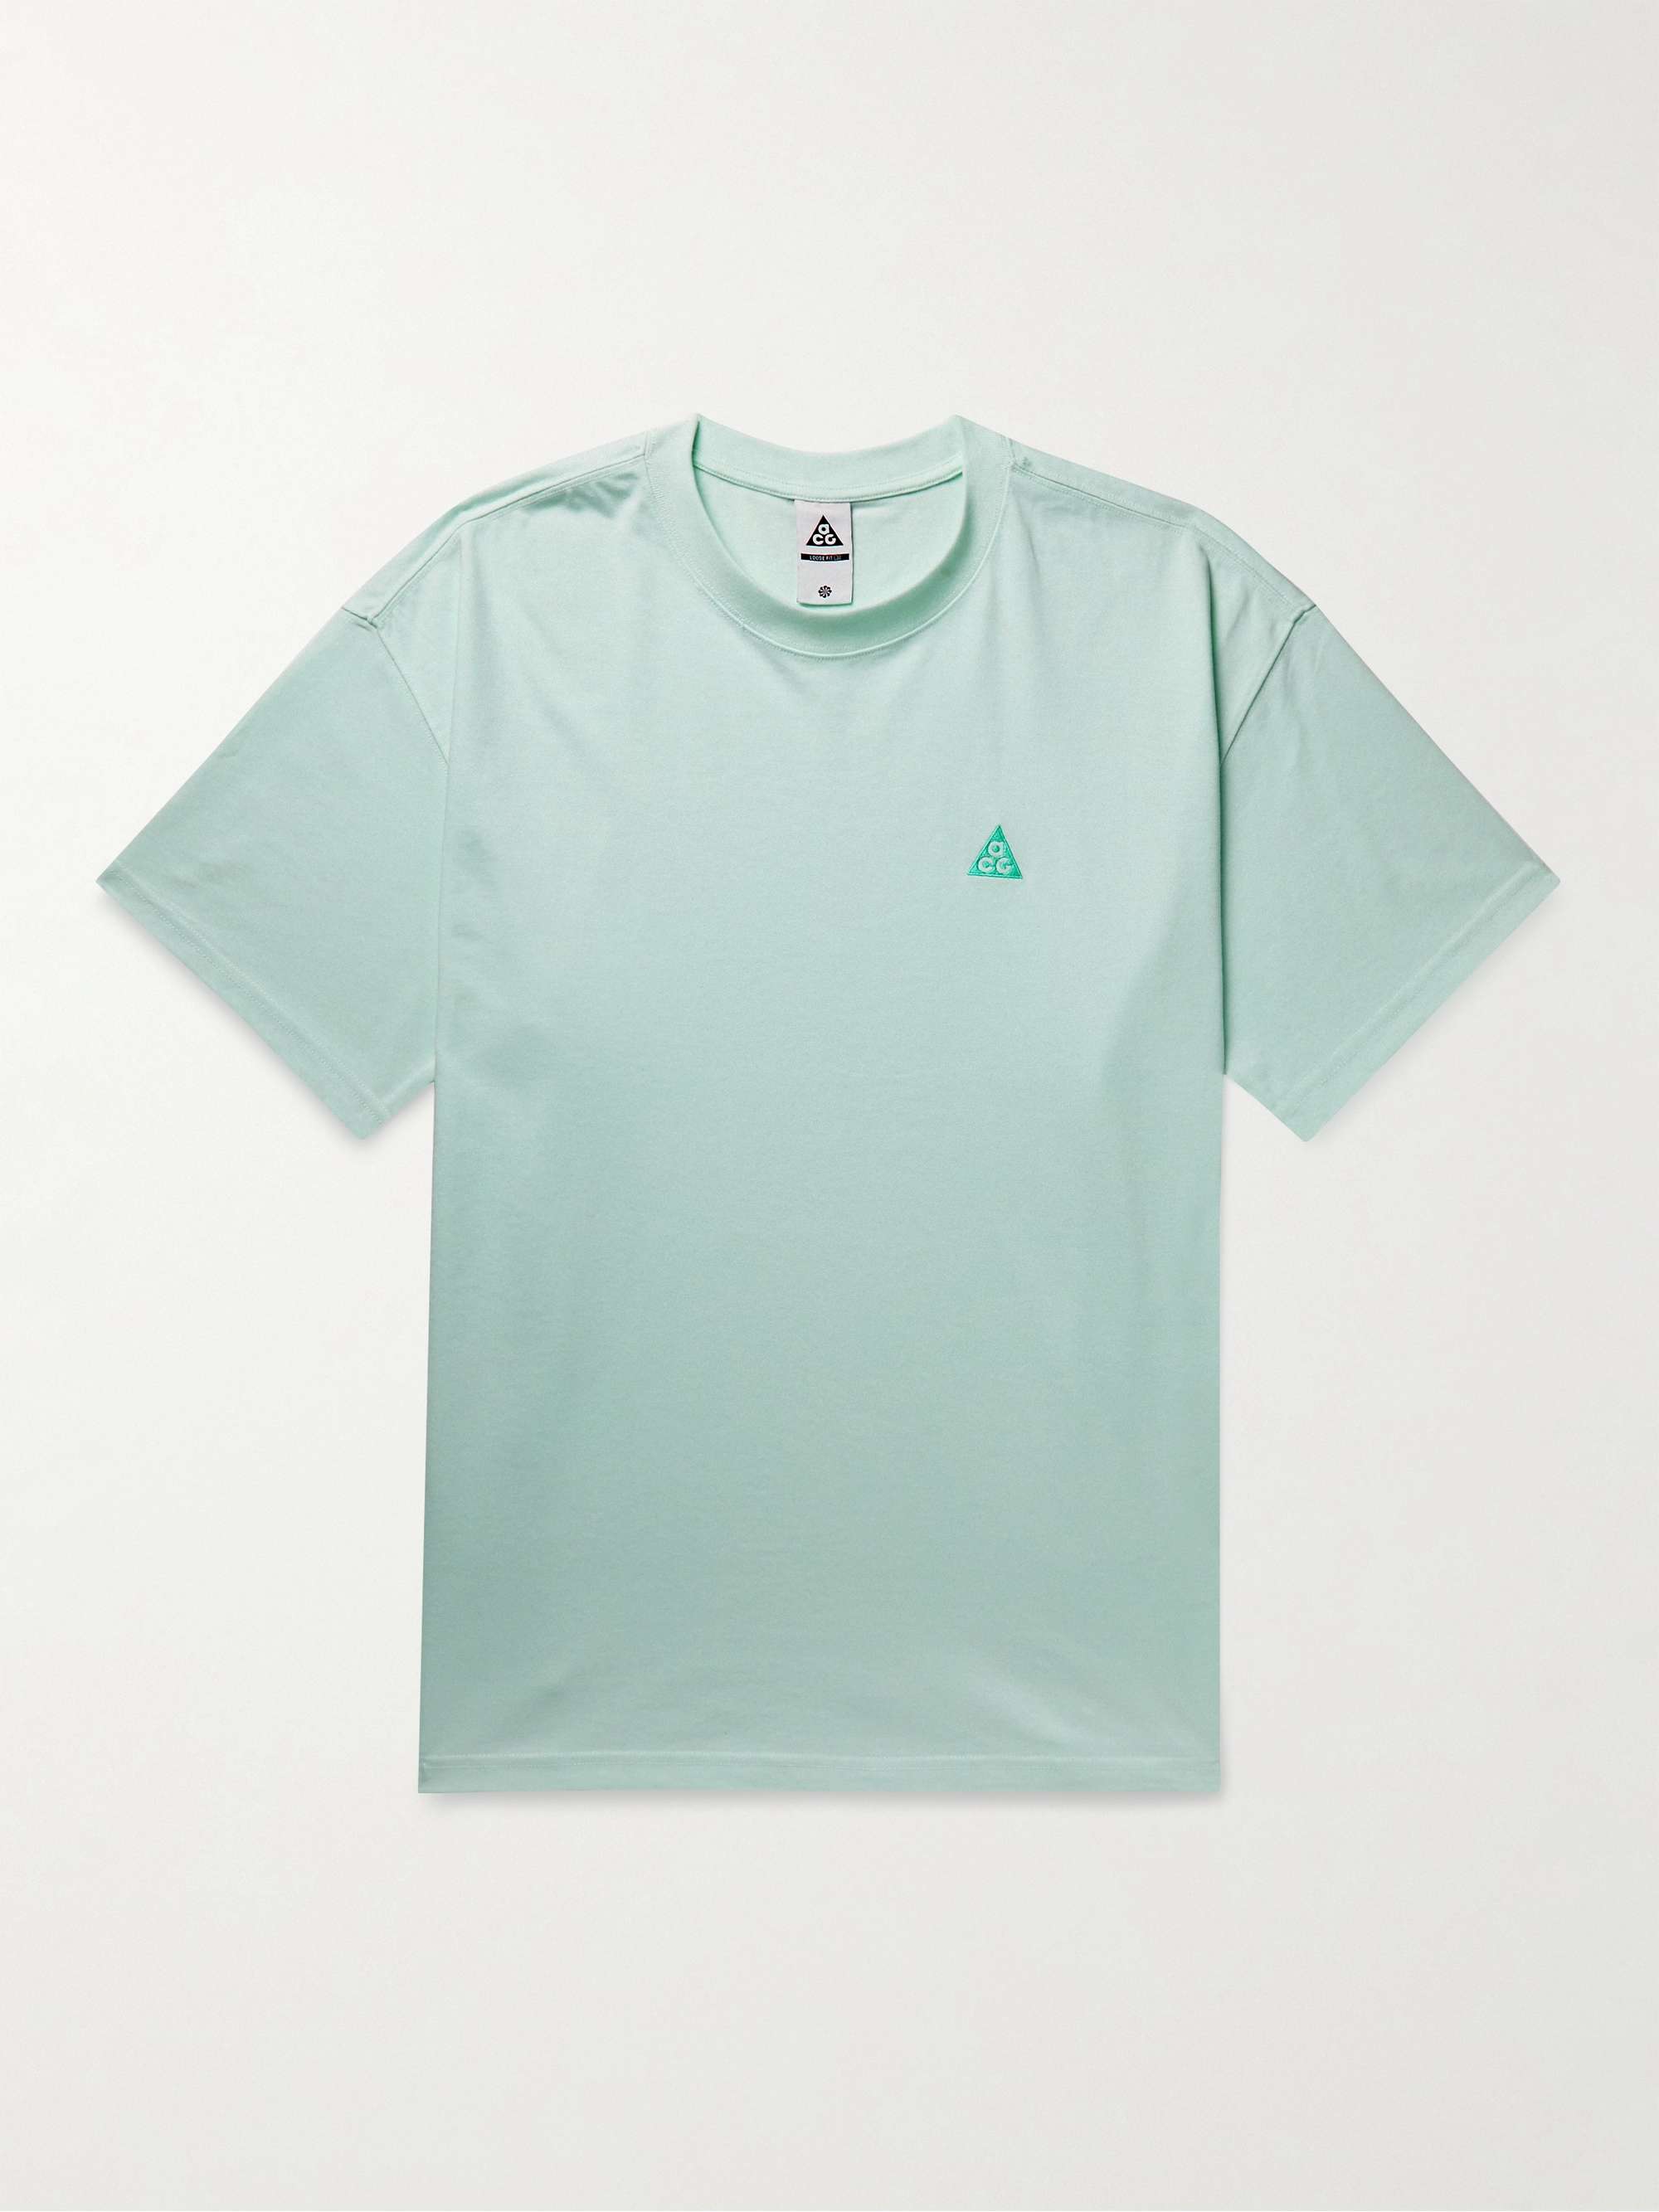 Light green ACG NRG Logo-Embroidered Jersey T-Shirt | NIKE | MR PORTER